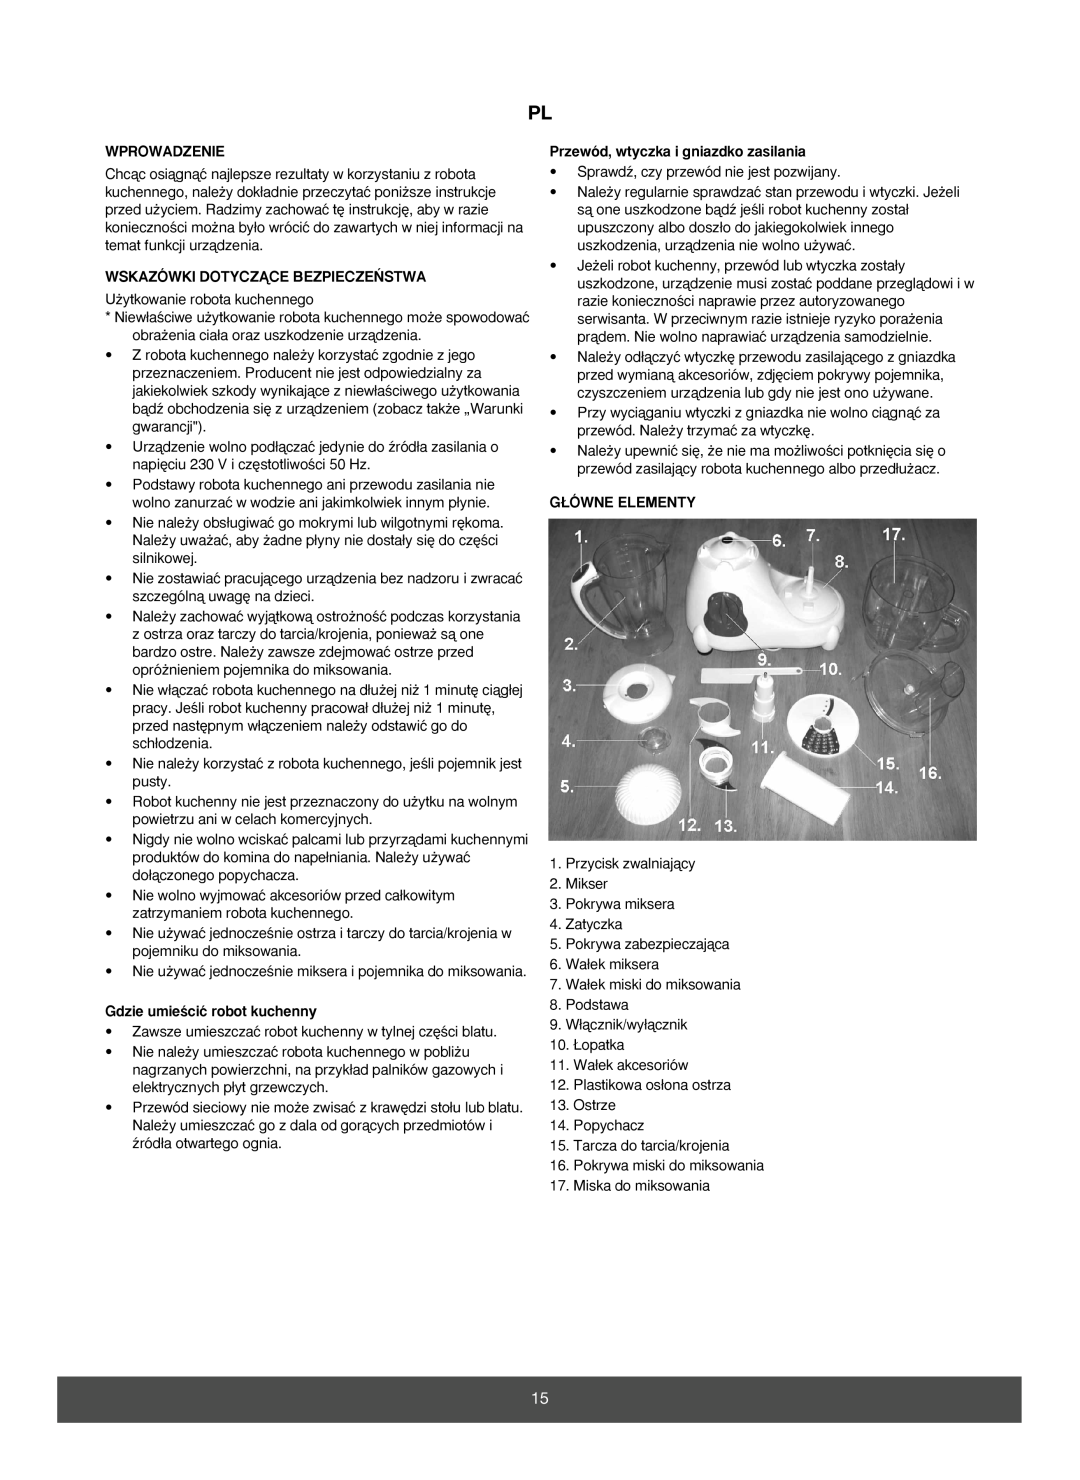 Melissa 646-033 manual Wprowadzenie, Wskazówki Dotyczñce Bezpiecze¡Stwa, Gdzie umieÊciç robot kuchenny, G¸Ówne Elementy 